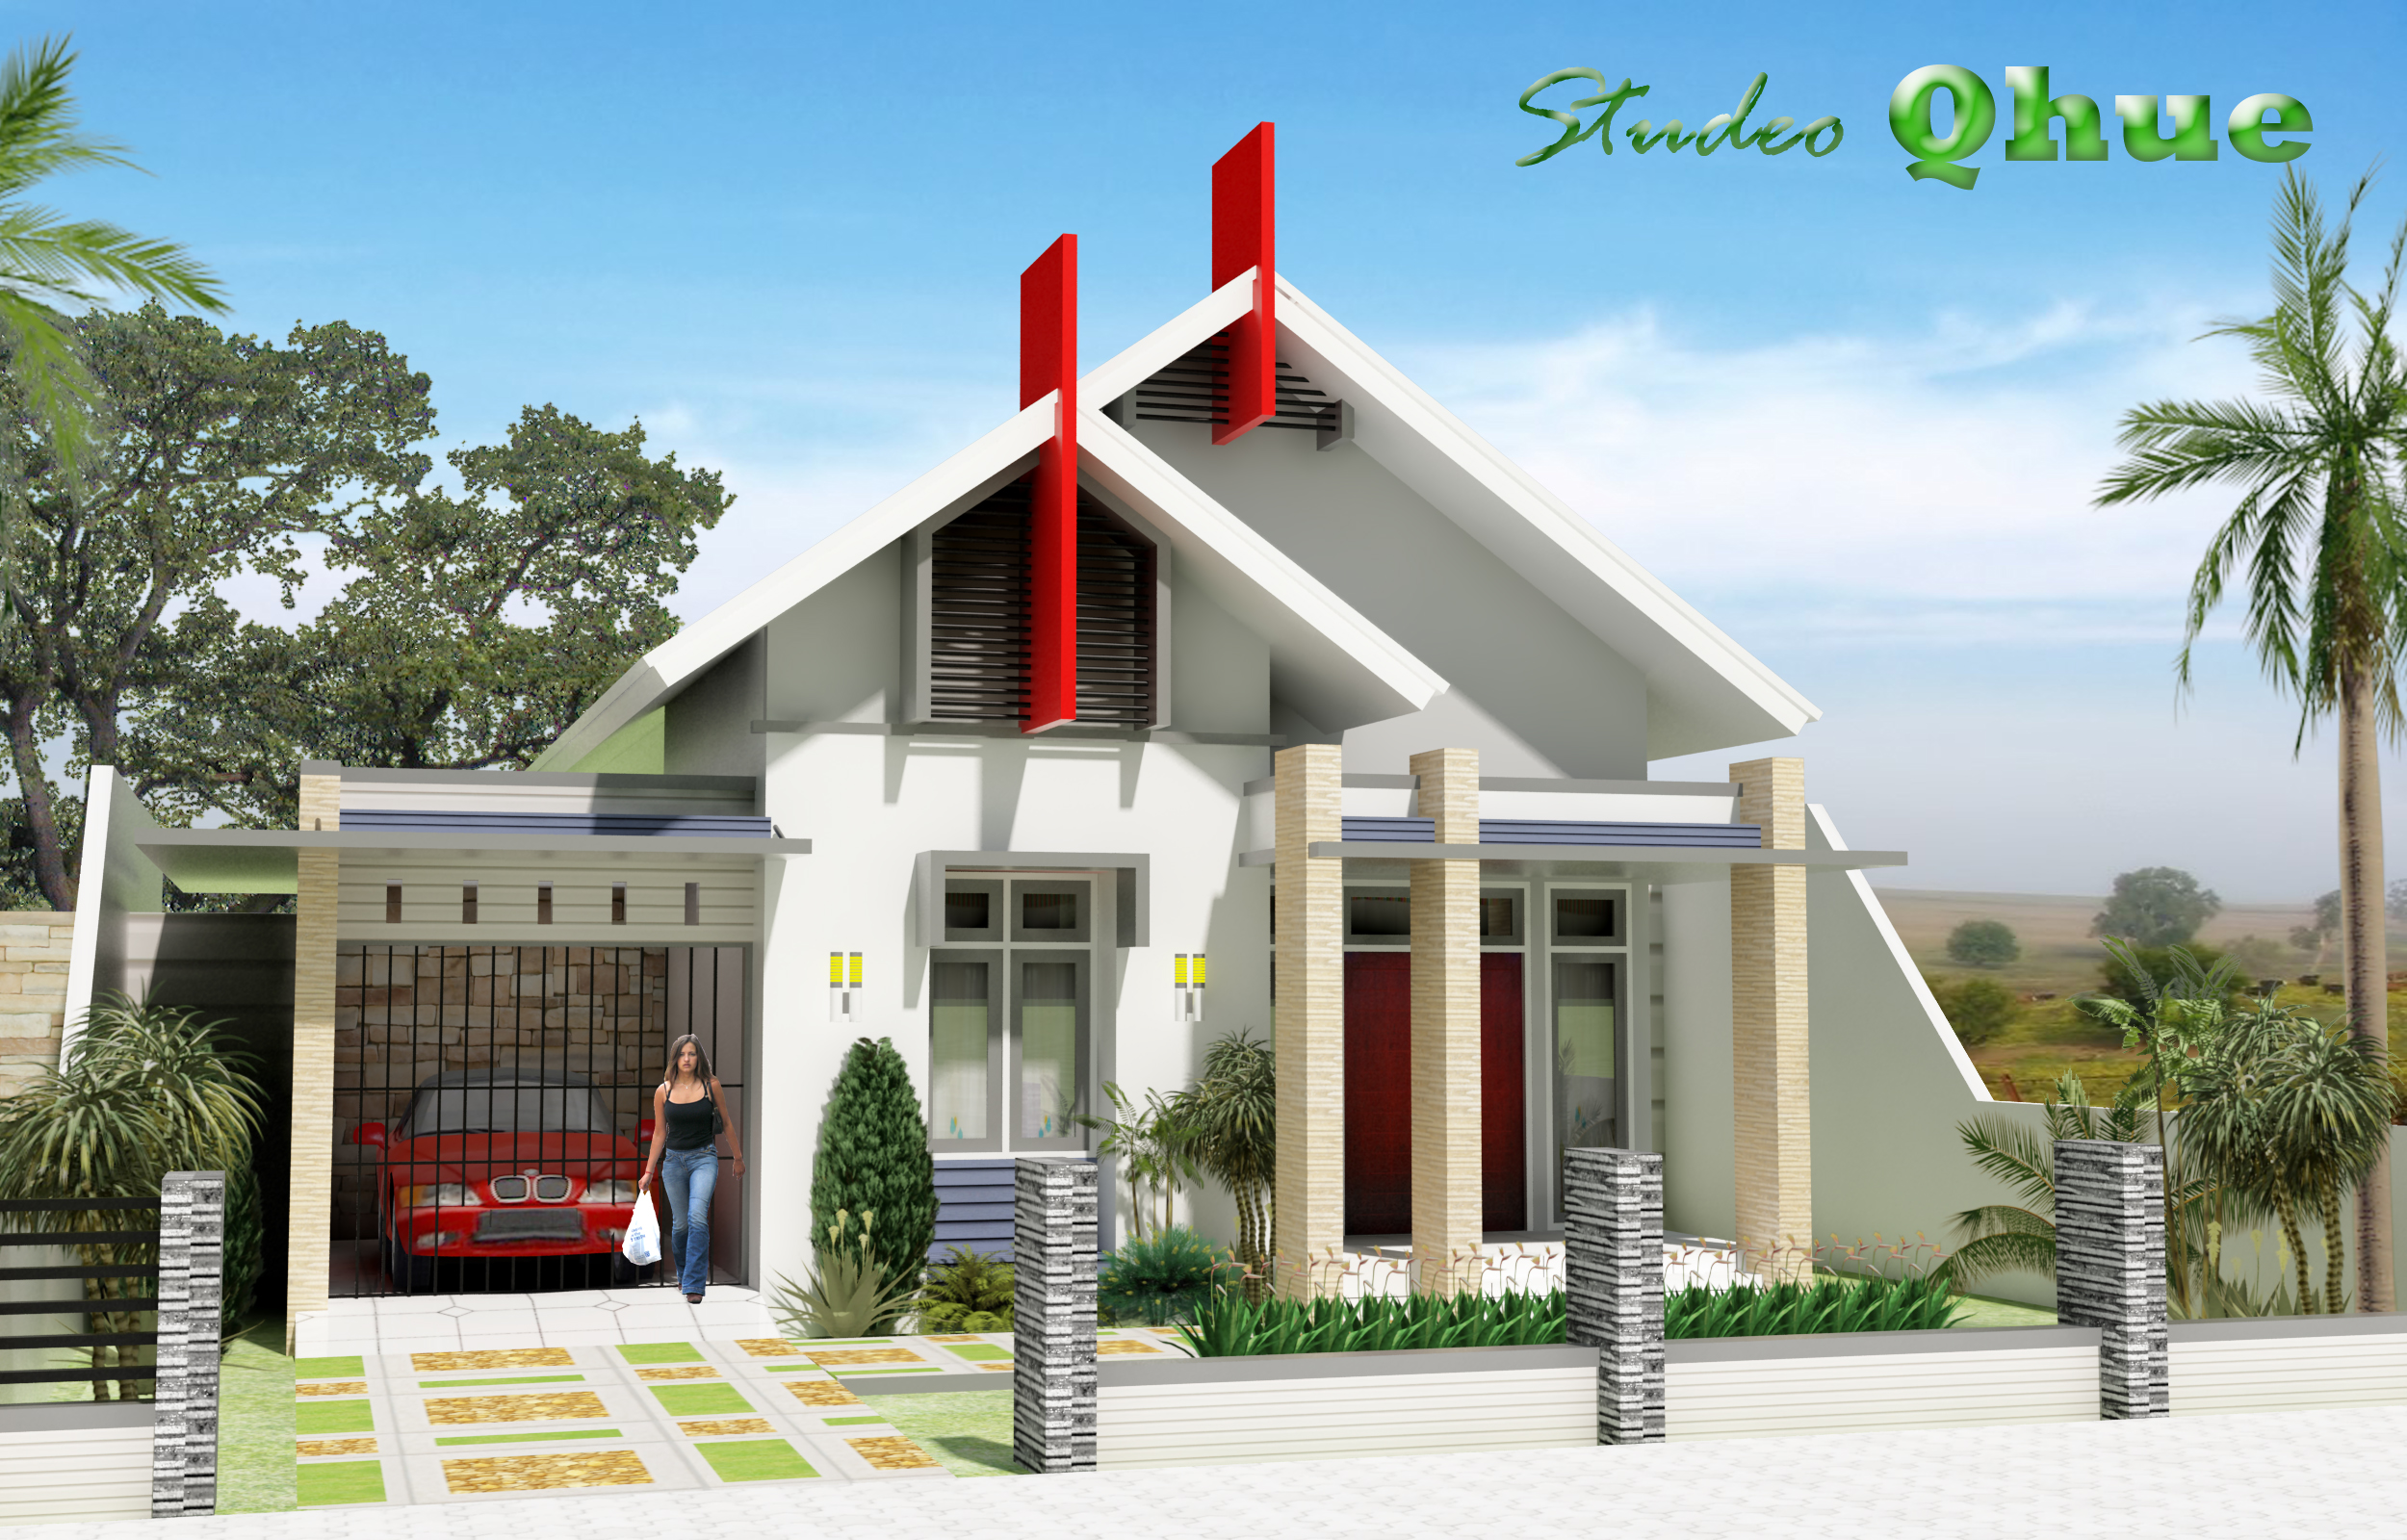 Desain Rumah Modern Tropis | Studeo Qhue